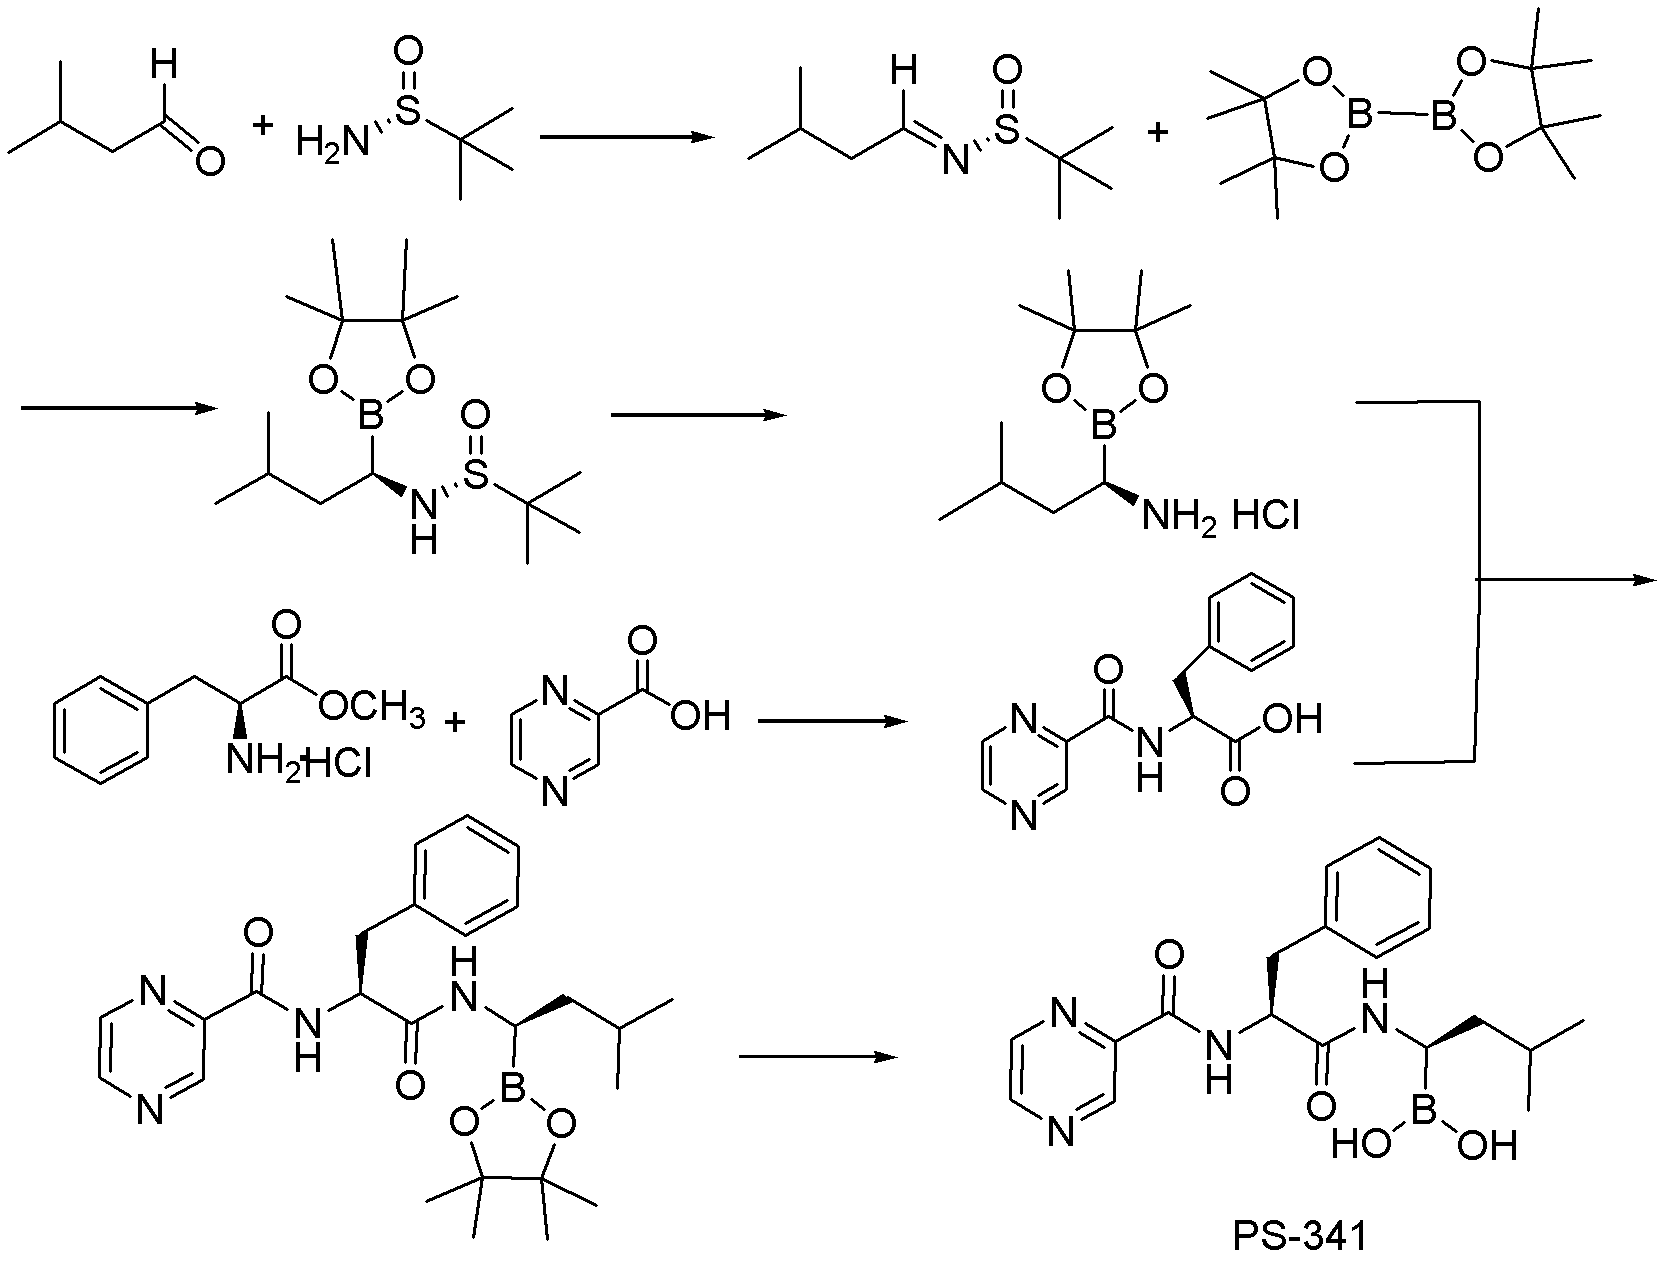 Synthetic method of proteasome inhibitor bortezomib and analogs